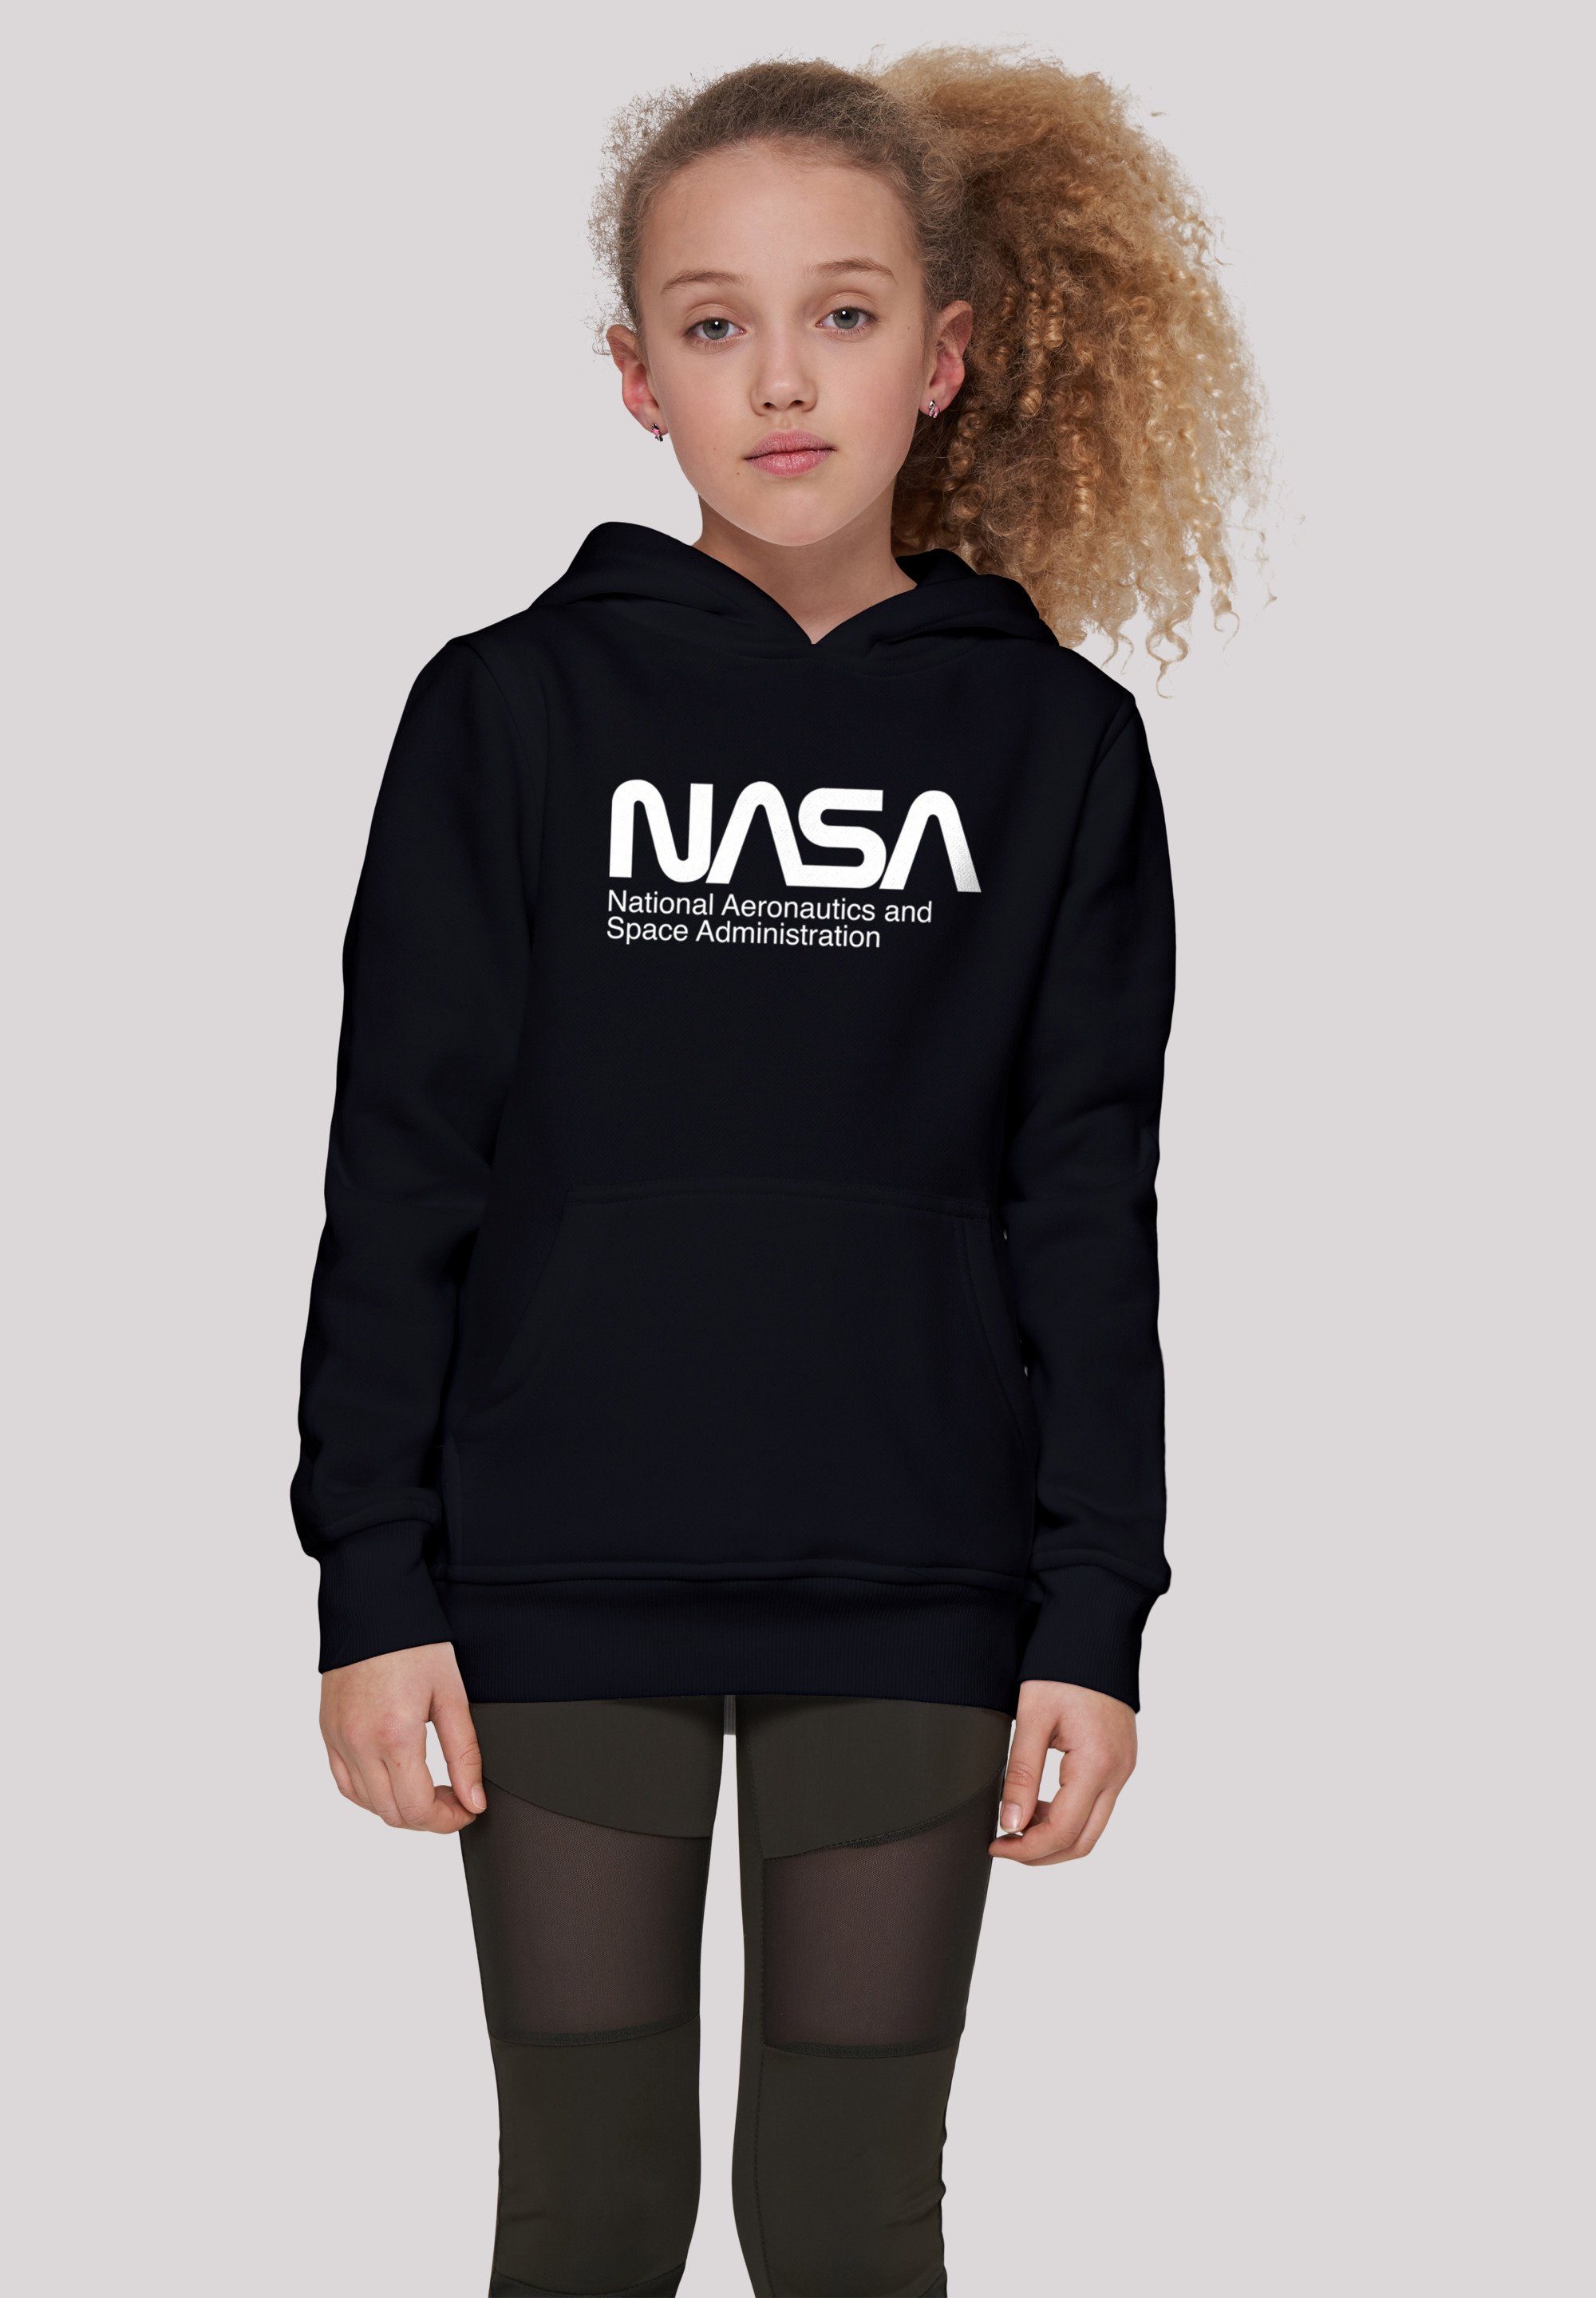 Space NASA Aeronautics And Kinder,Premium Merch,Jungen,Mädchen,Bedruckt Unisex Sweatshirt F4NT4STIC